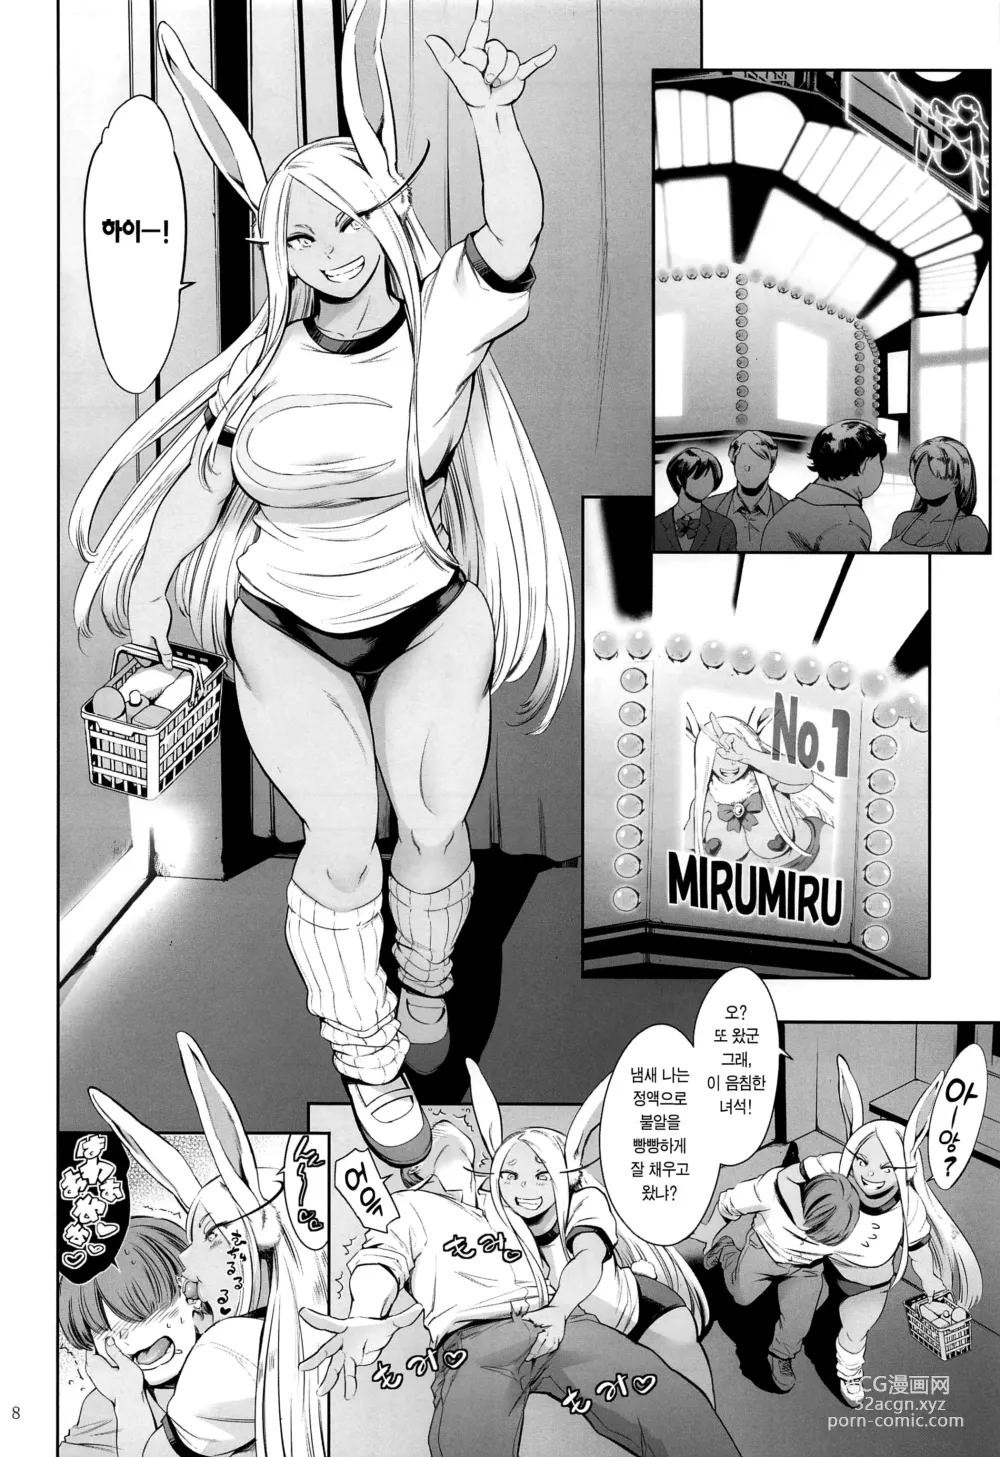 Page 7 of doujinshi 지명은 토끼입니까?